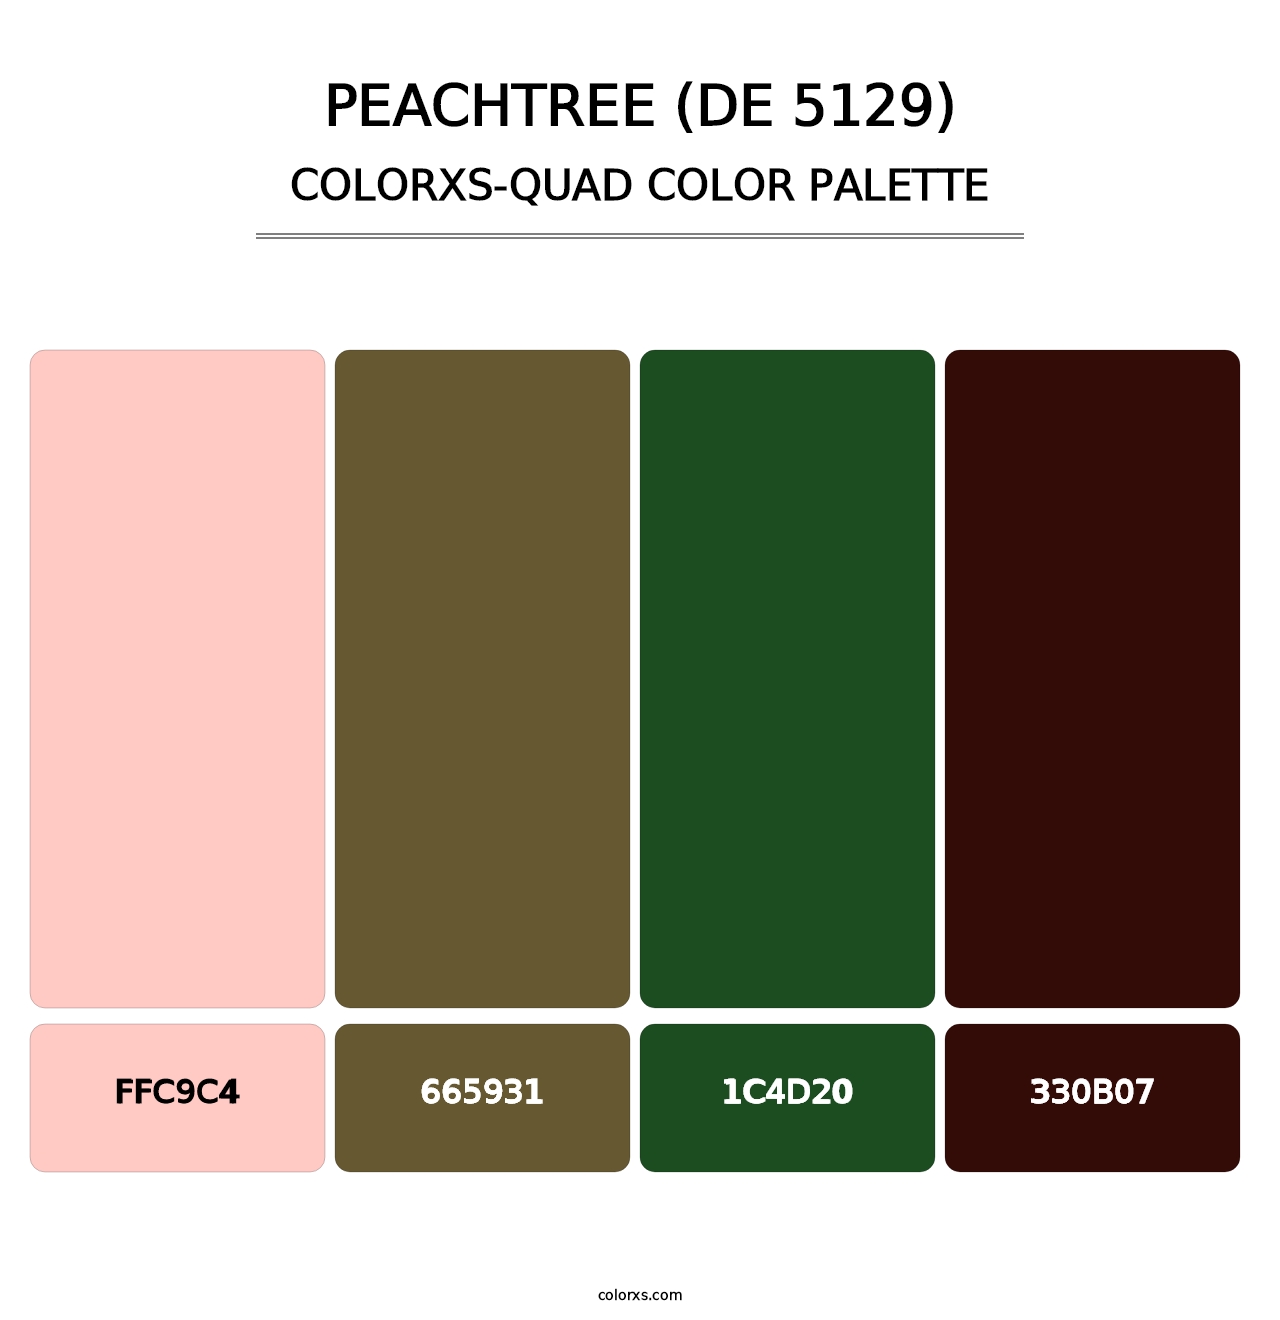 Peachtree (DE 5129) - Colorxs Quad Palette